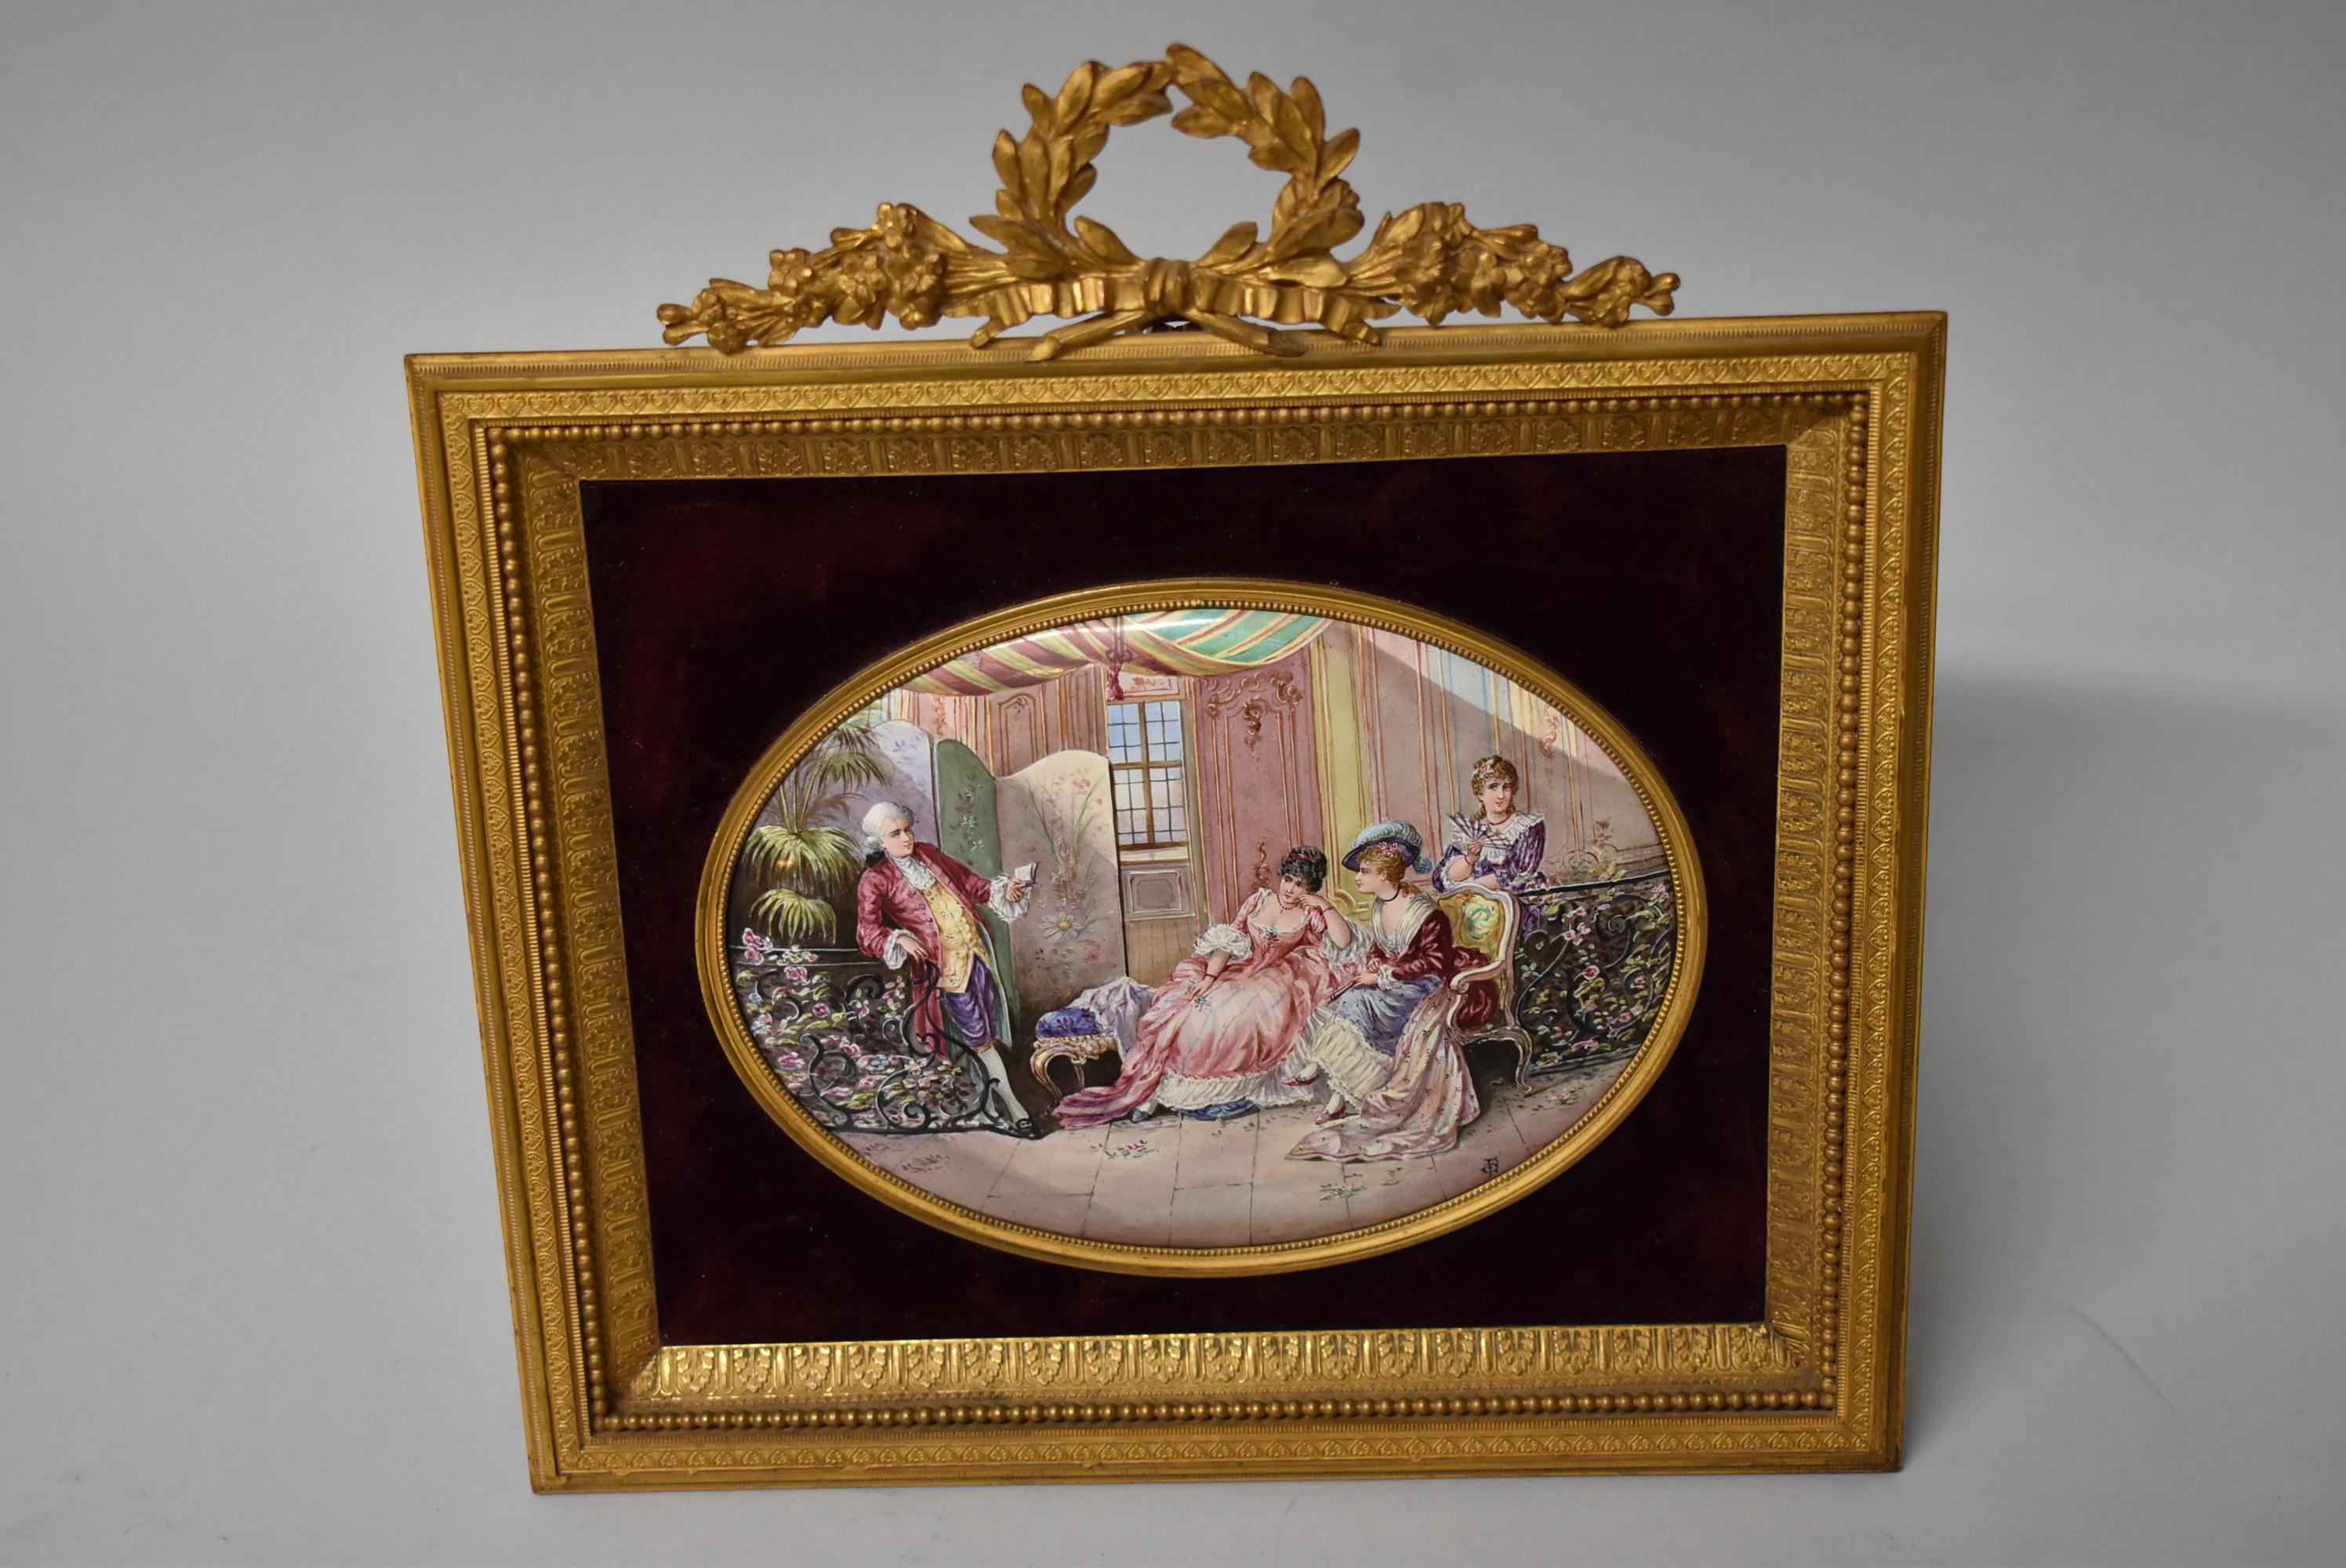 Antike französische ovale Miniaturmalerei auf Porzellan. Die Damen und ein Herr versammeln sich in einem Salon. Sehr schöner bis ausgezeichneter Zustand. Der Stoff auf der Rückseite ist abgenutzt.  Bild misst 5,5